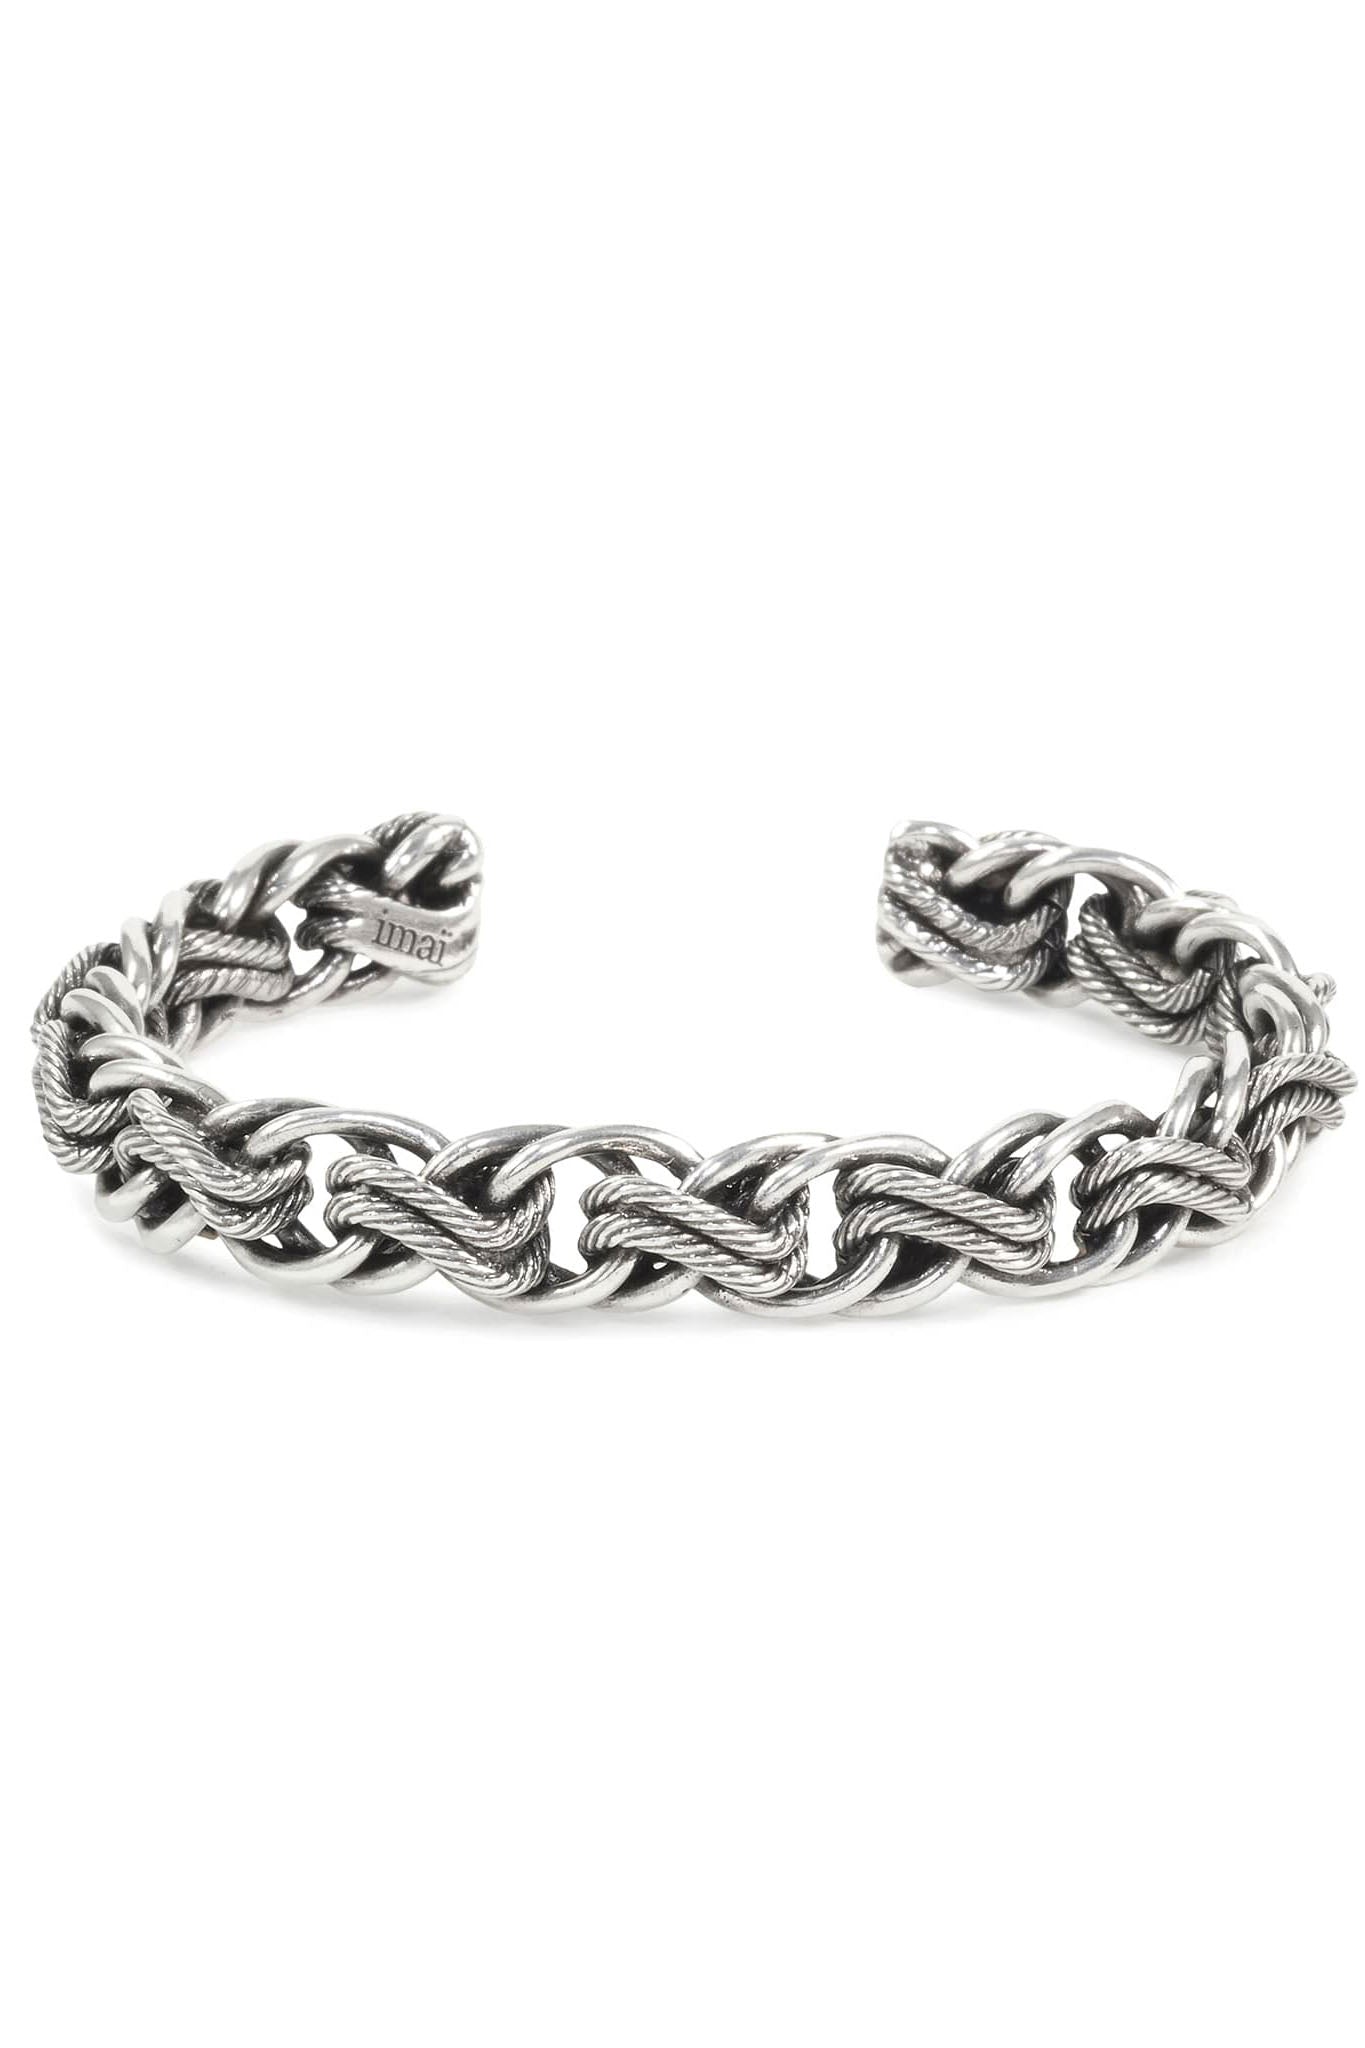 Bracelet Maille - Silver